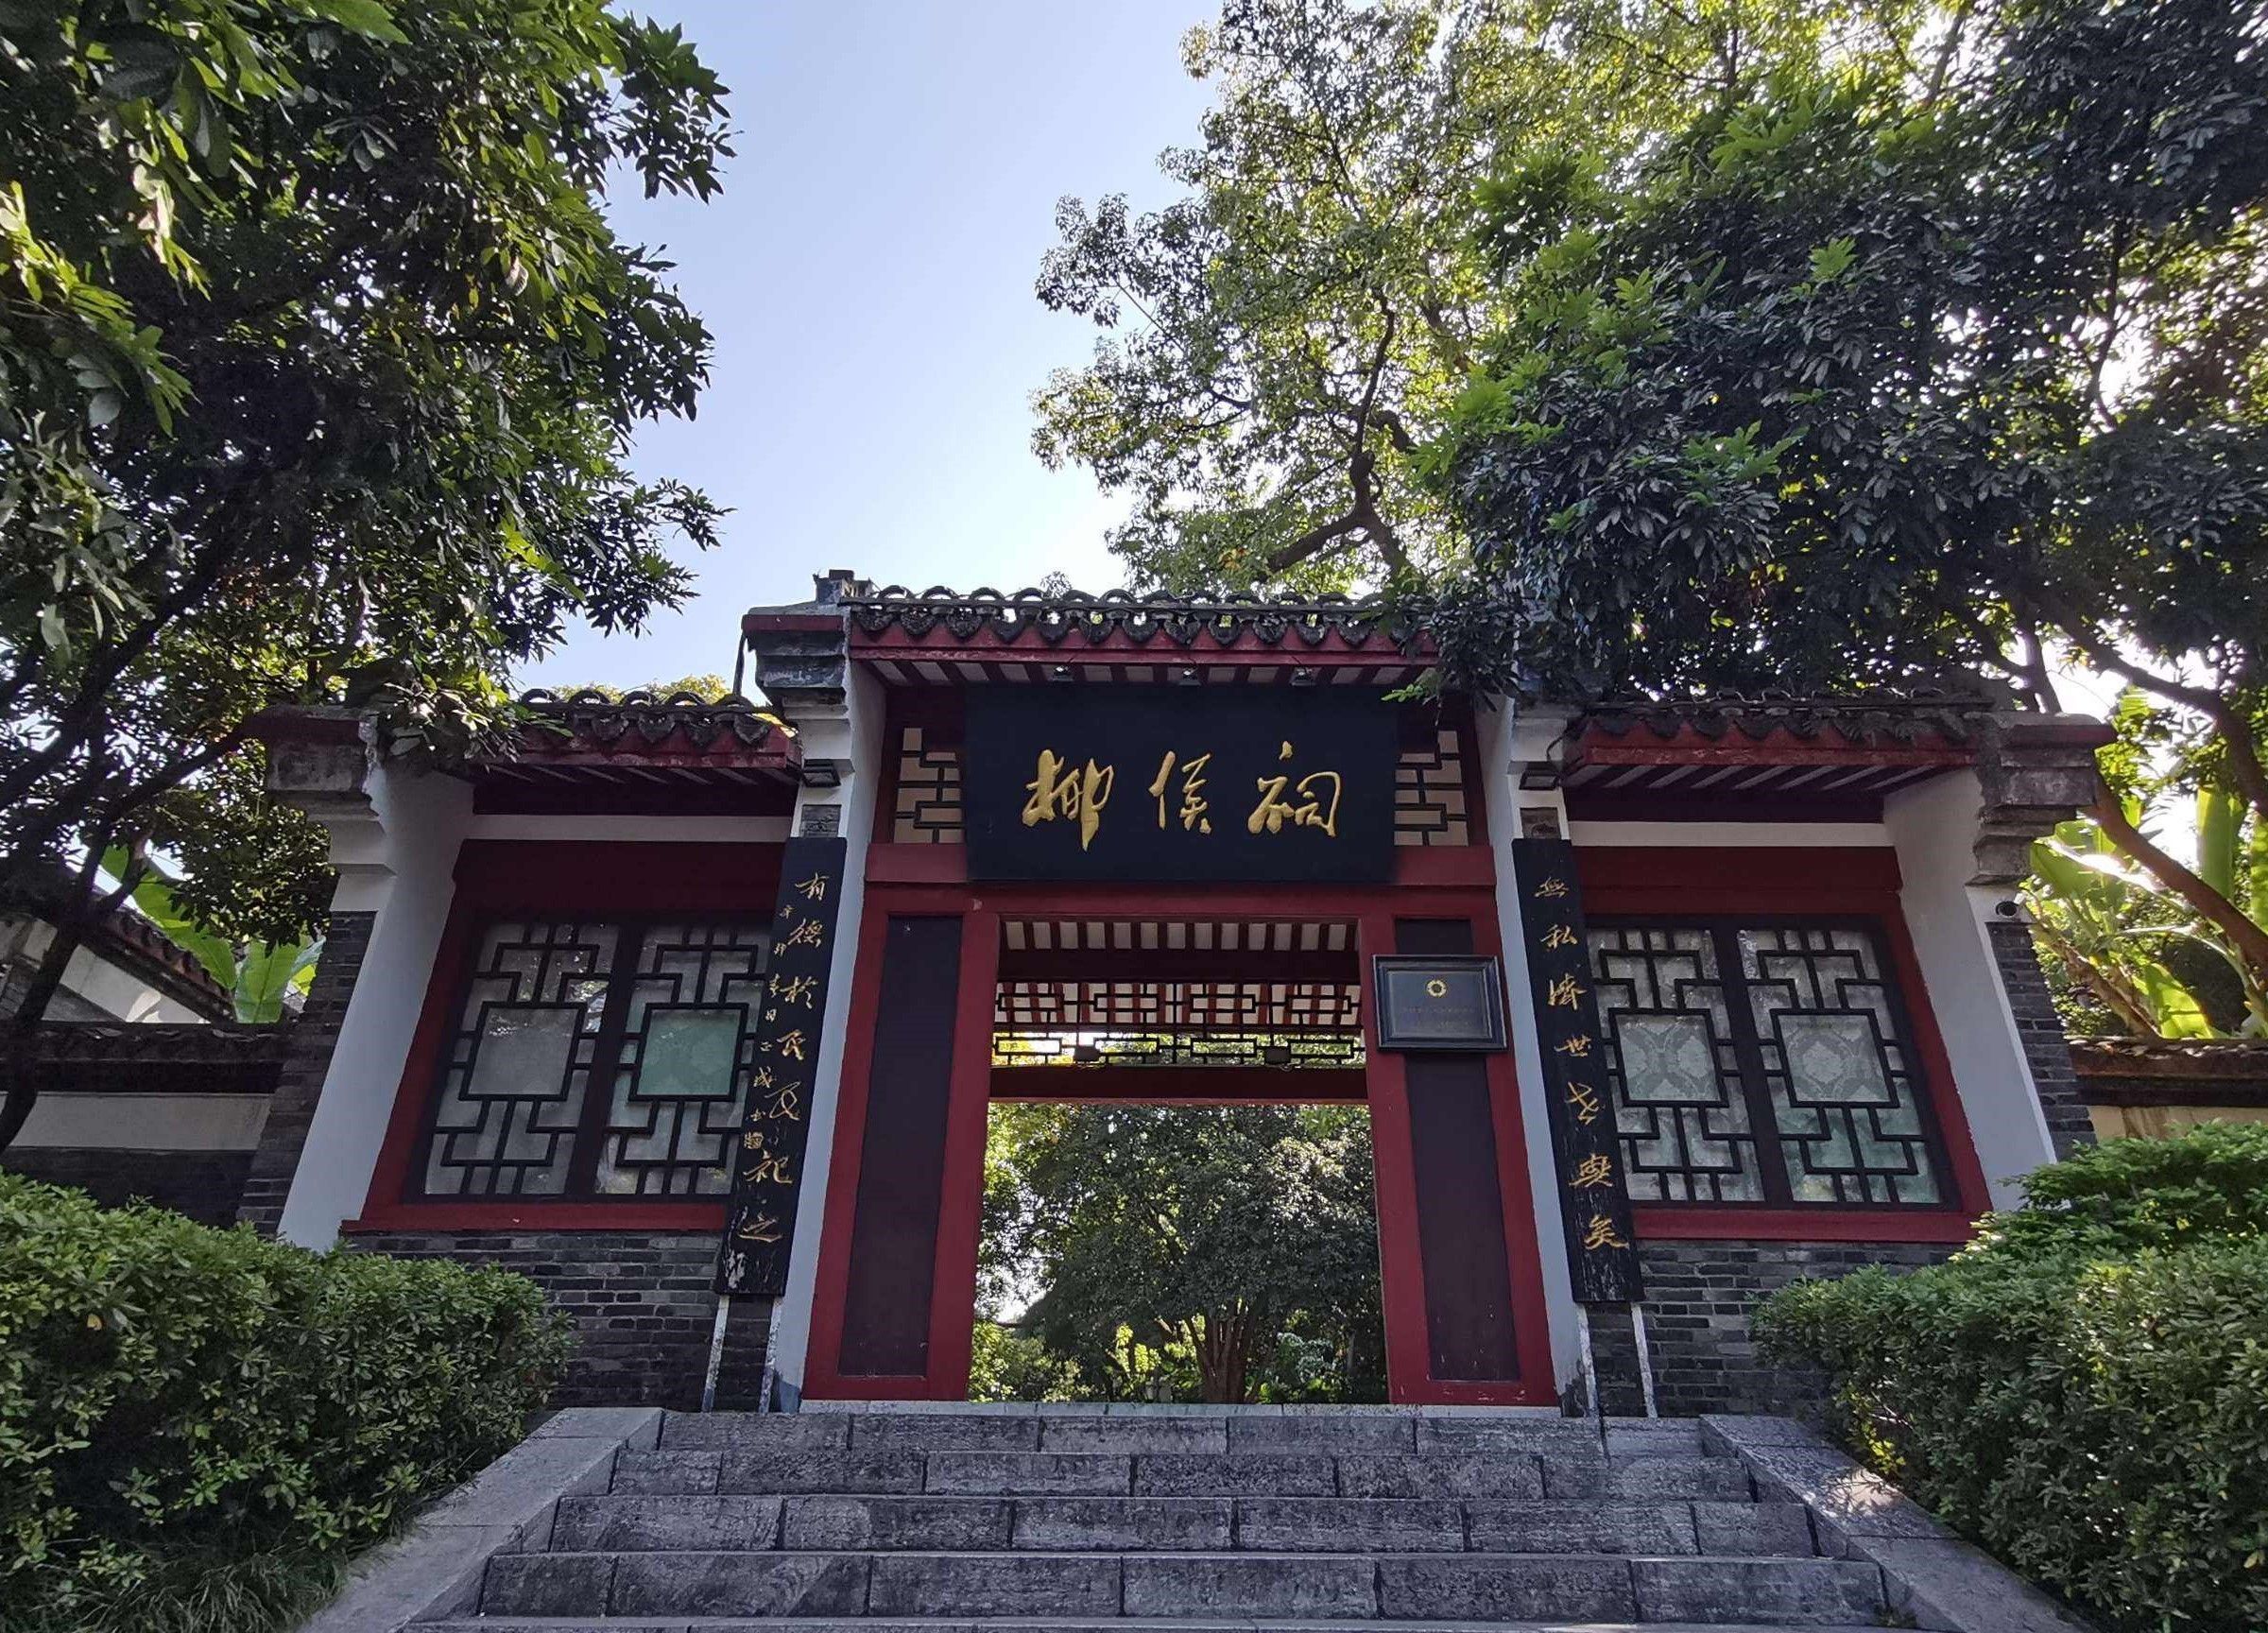 柳侯祠位于柳州市公园内,为纪念唐代著名文学家柳宗元而建